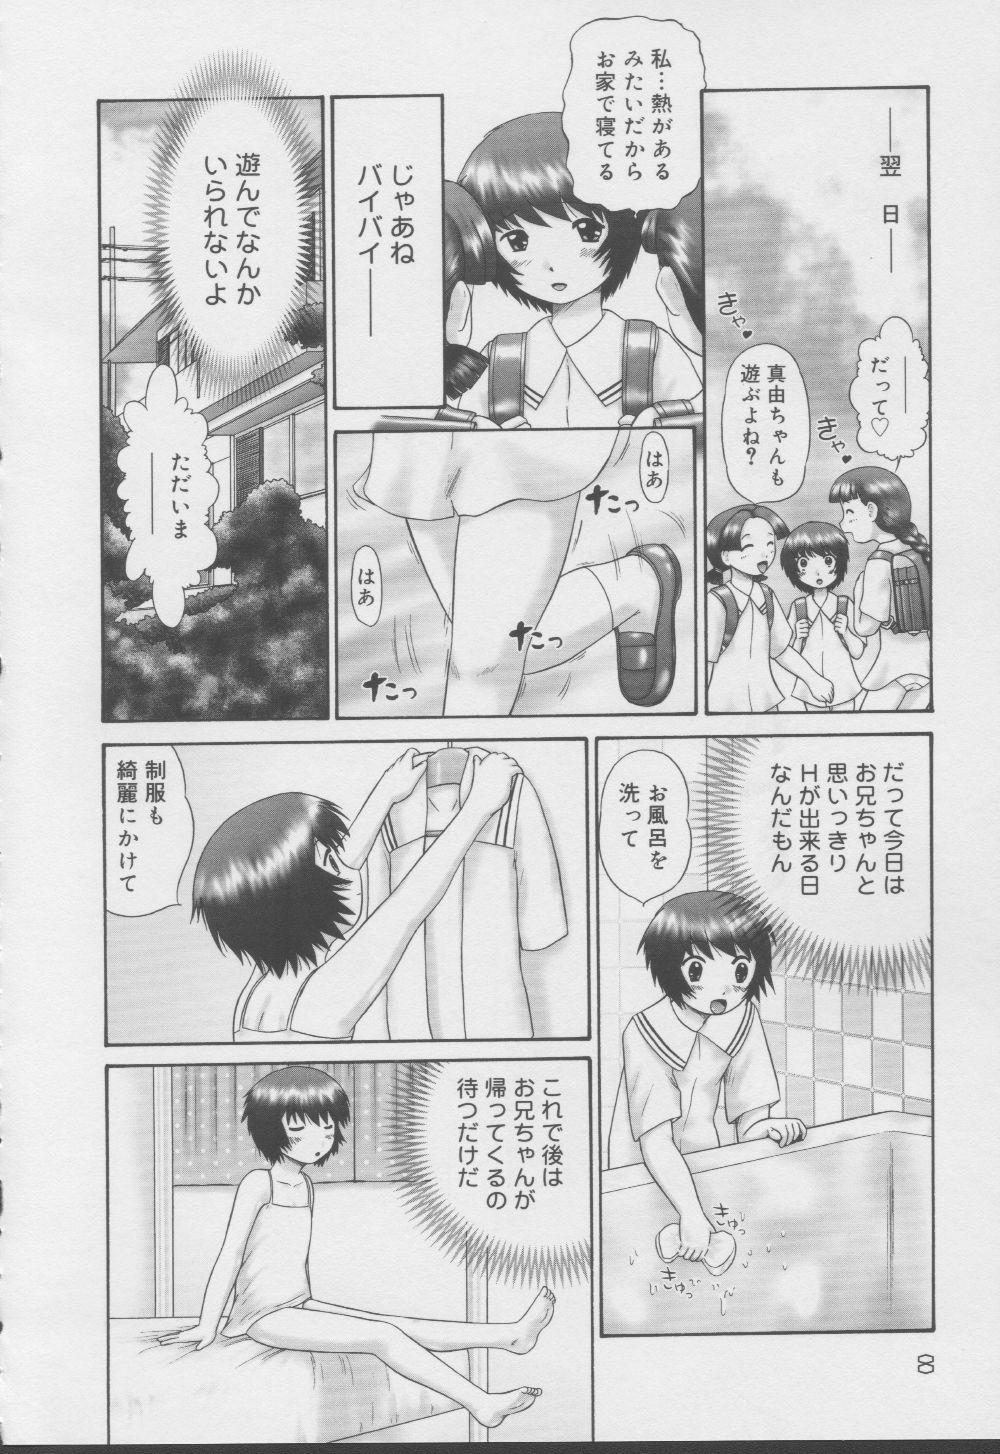 Corrida Kazoku no Shisen Shisshiki 2 Furry - Page 8